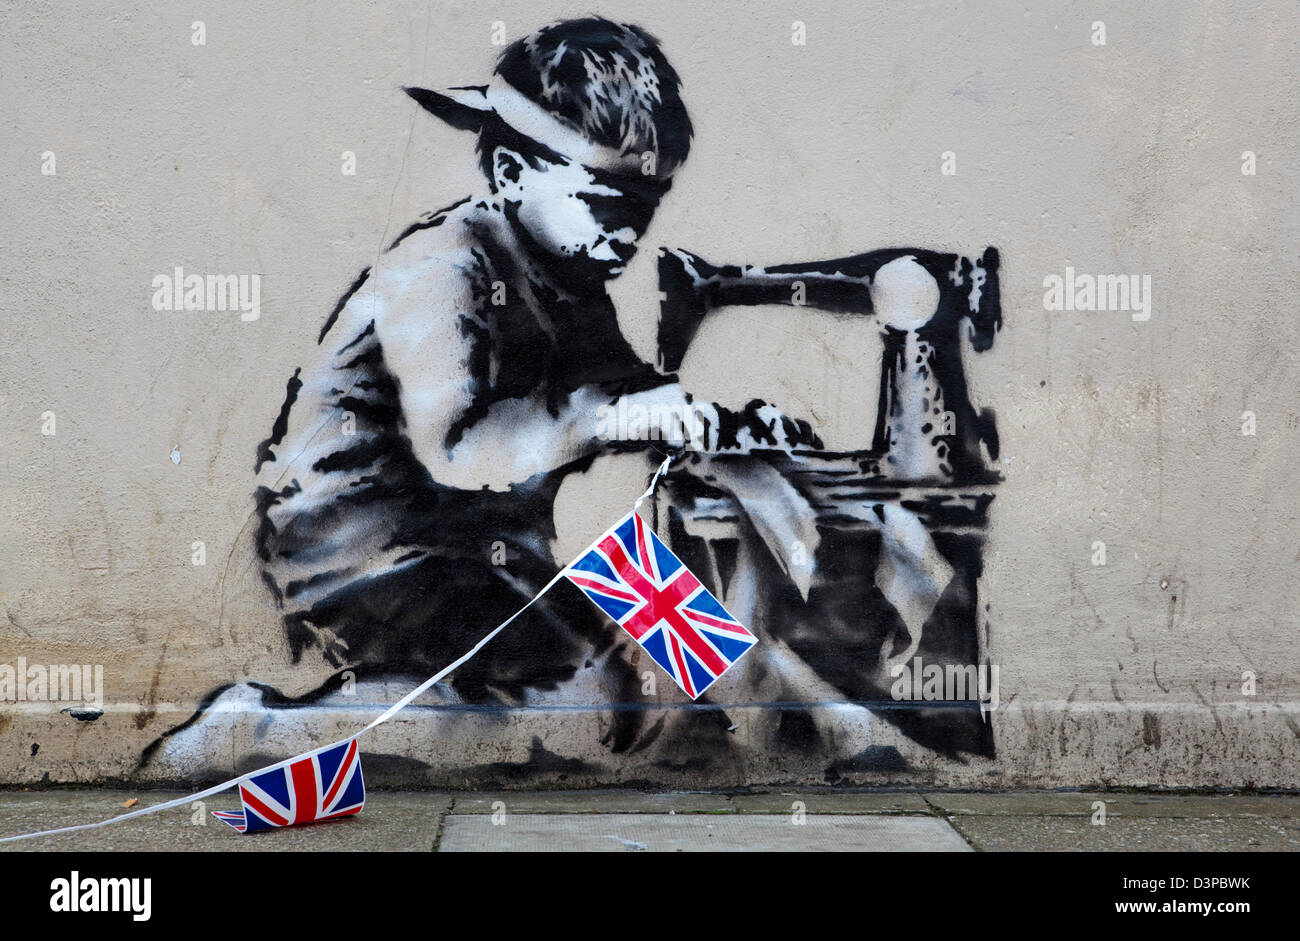 Ein Werk von Graffiti Künstler Banksy, die an einer Wand des Einzelhändlers Poundland erschienen, kurz vor Beginn der Olympischen Spiele 2012 in der Stadt wurde zu entfernen und für den Verkauf auf dem amerikanischen Auktions-Website "Live Auctioneers" mit einem Richtpreis von $500.000-700.000 platziert.  Das Stück zeigt ein asiatische Kind Union Jack Bunting zusammenfügen.  Die Arbeit soll Banksys Kommentar zur Kinderarbeit in einem Jahr, die sowohl die Königin diamantenes Jubiläum feiern sah und die Olympischen Spiele in der Hauptstadt gewesen sein. http://www.Liveauctioneers.com/Item/15778020 banksy-Slave-Labor-Bunting-Boy-London-2012 Stockfoto